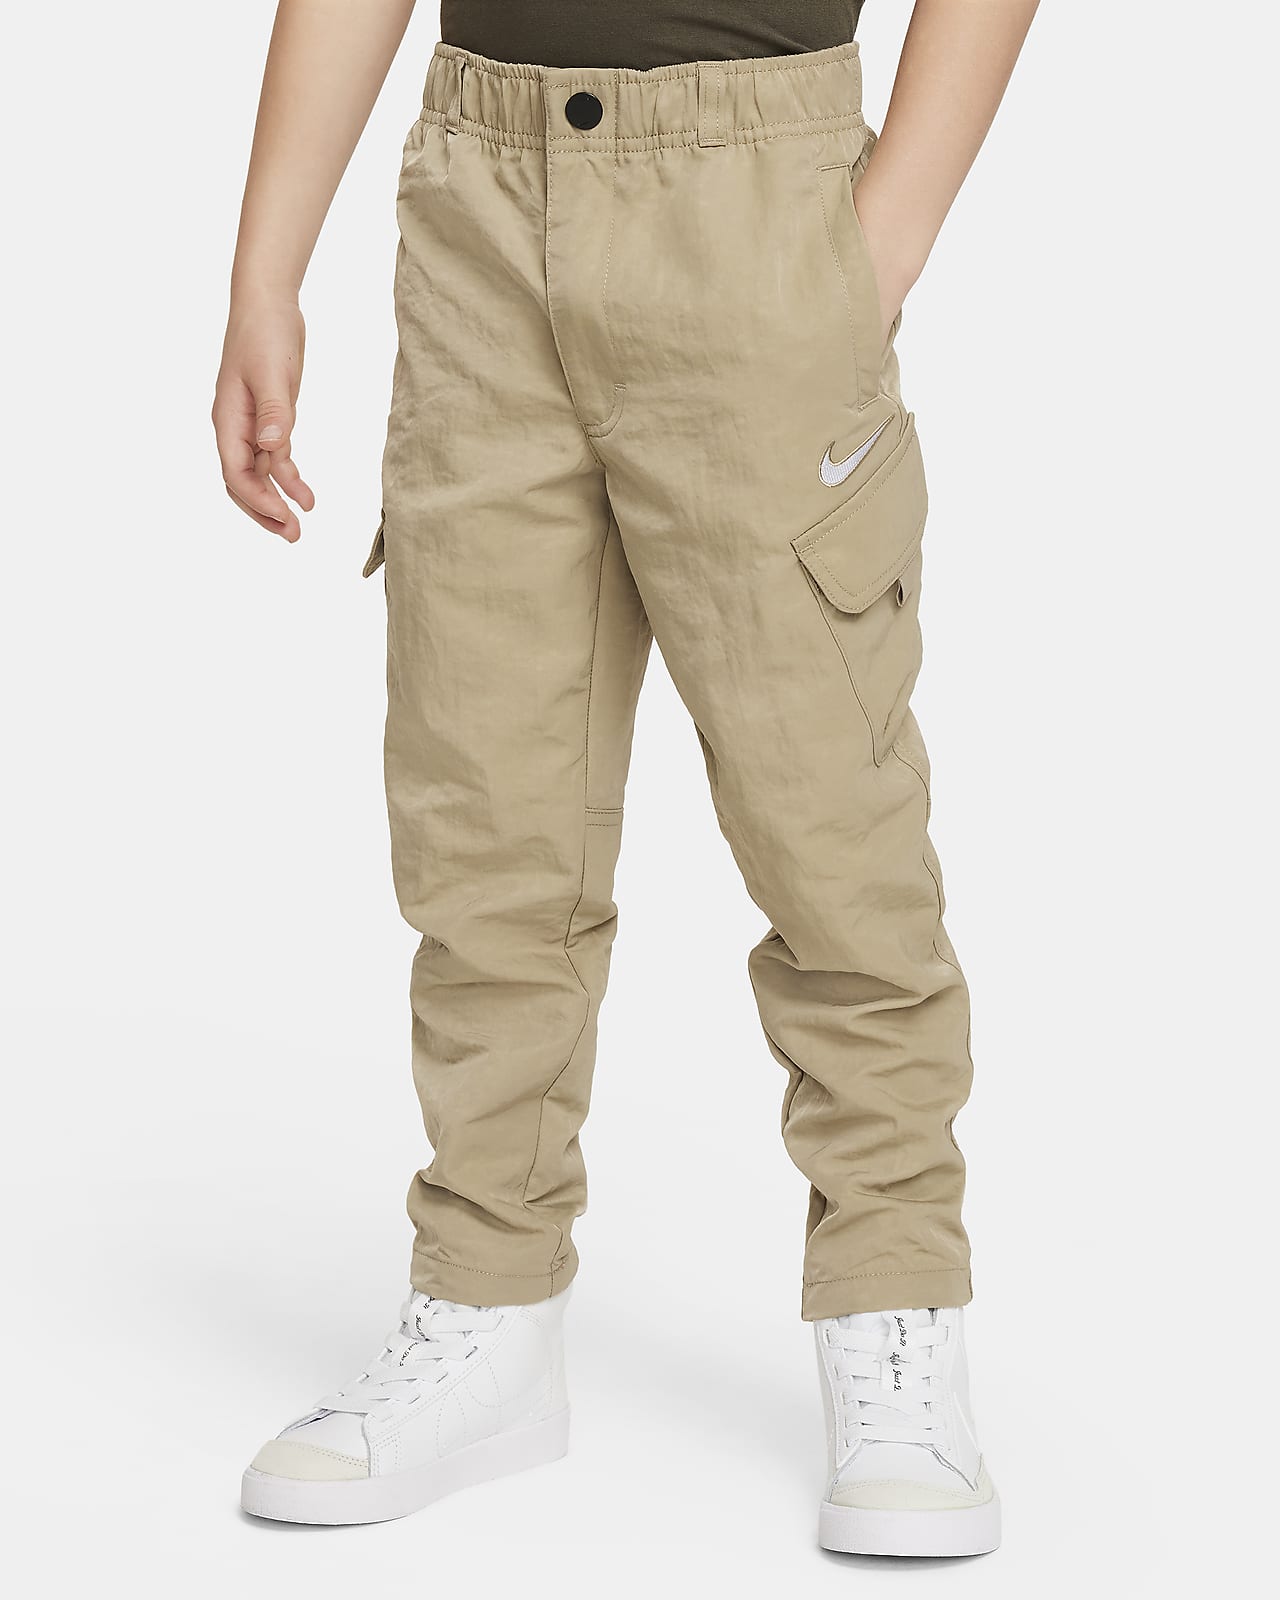 Nike Little Kids' Cargo Pants